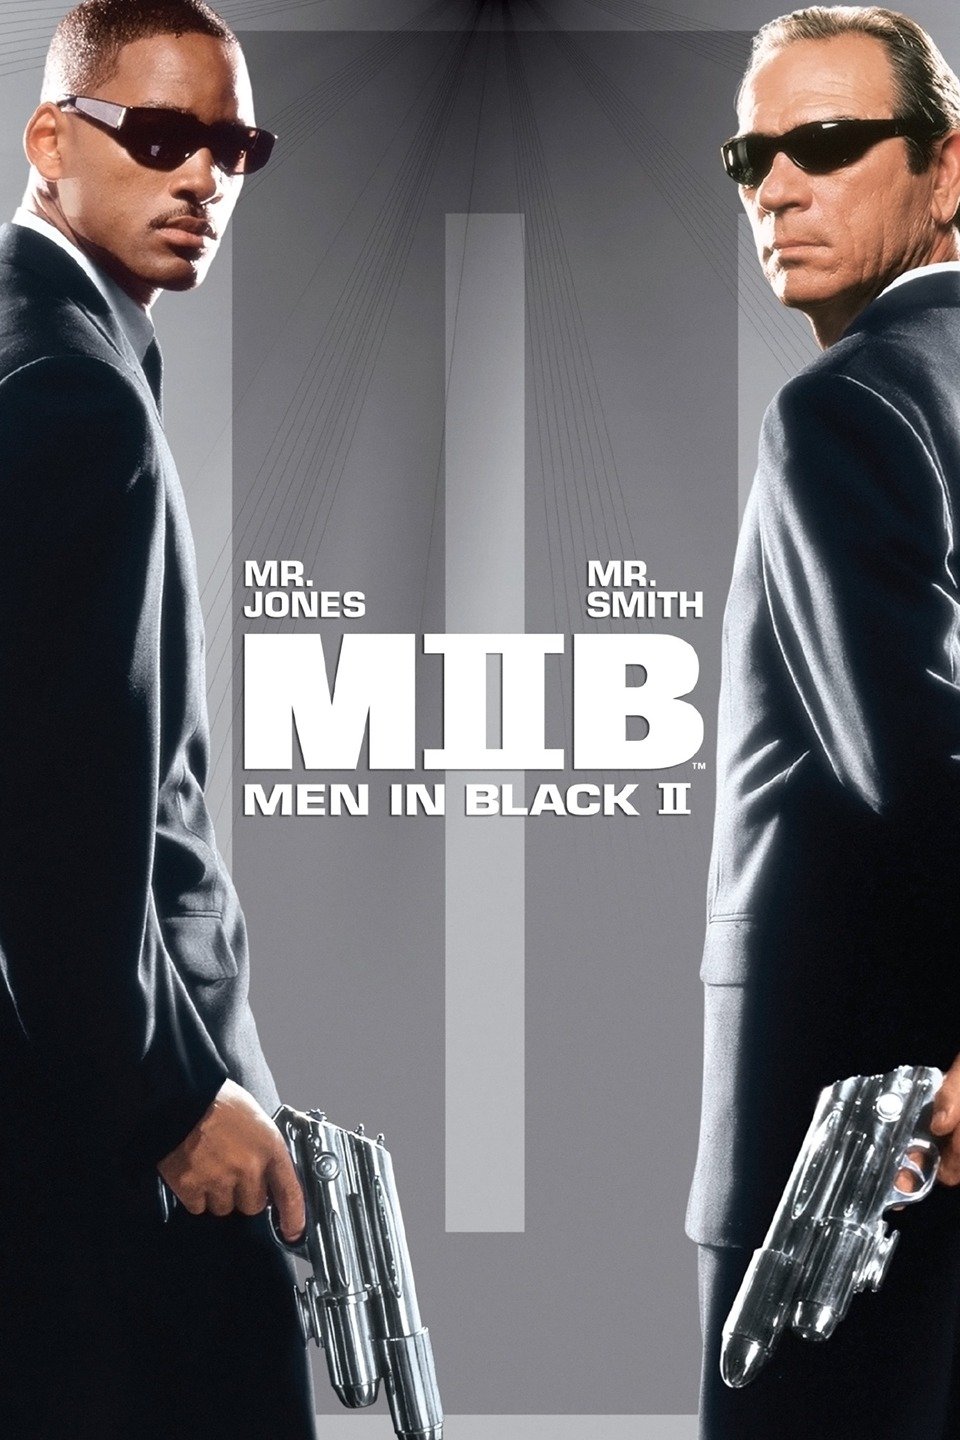 [MINI Super-HQ] Men in Black II (2002) เอ็มไอบี หน่วยจารชนพิทักษ์จักรวาล ภาค 2 [1080p] [พากษ์ไทย 5.1 + เสียงอังกฤษ DTS] [บรรยายไทย + อังกฤษ] [เสียงไทย + ซับไทย] [OPENLOAD]